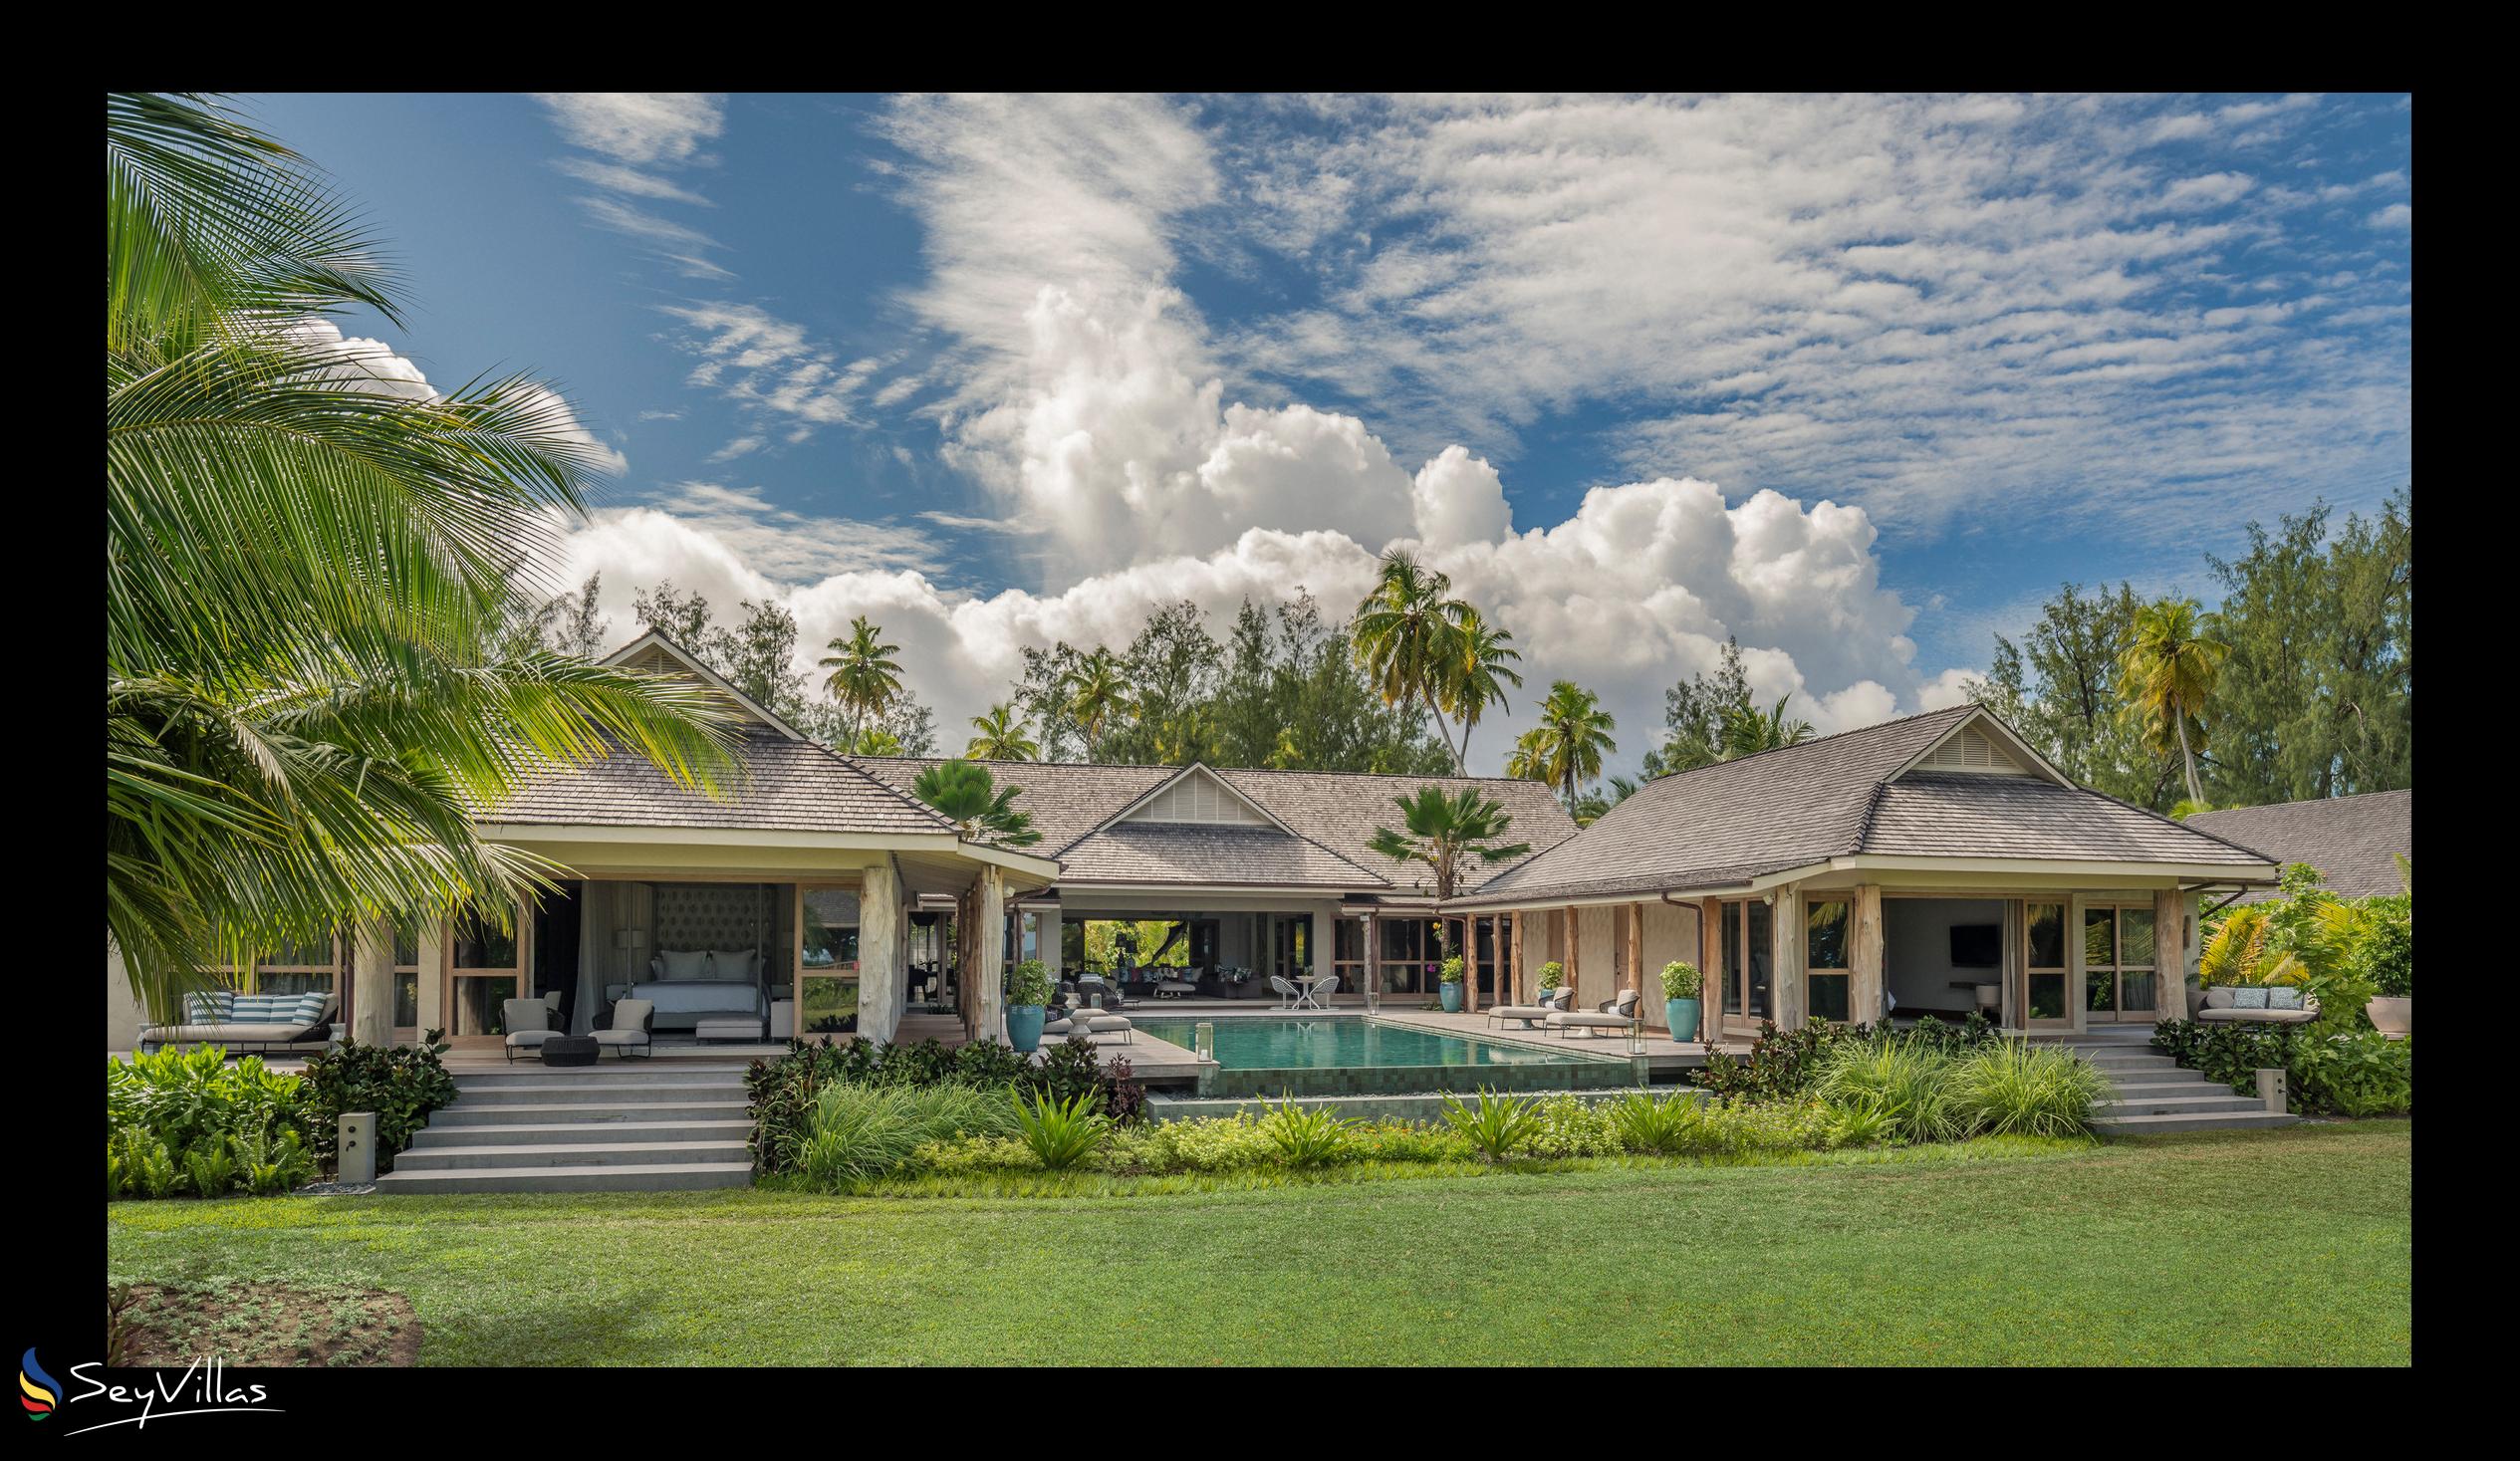 Foto 179: Four Seasons Resort Desroches Island - 5-Schlafzimmer Präsidenten-Villa - Desroches Island (Seychellen)